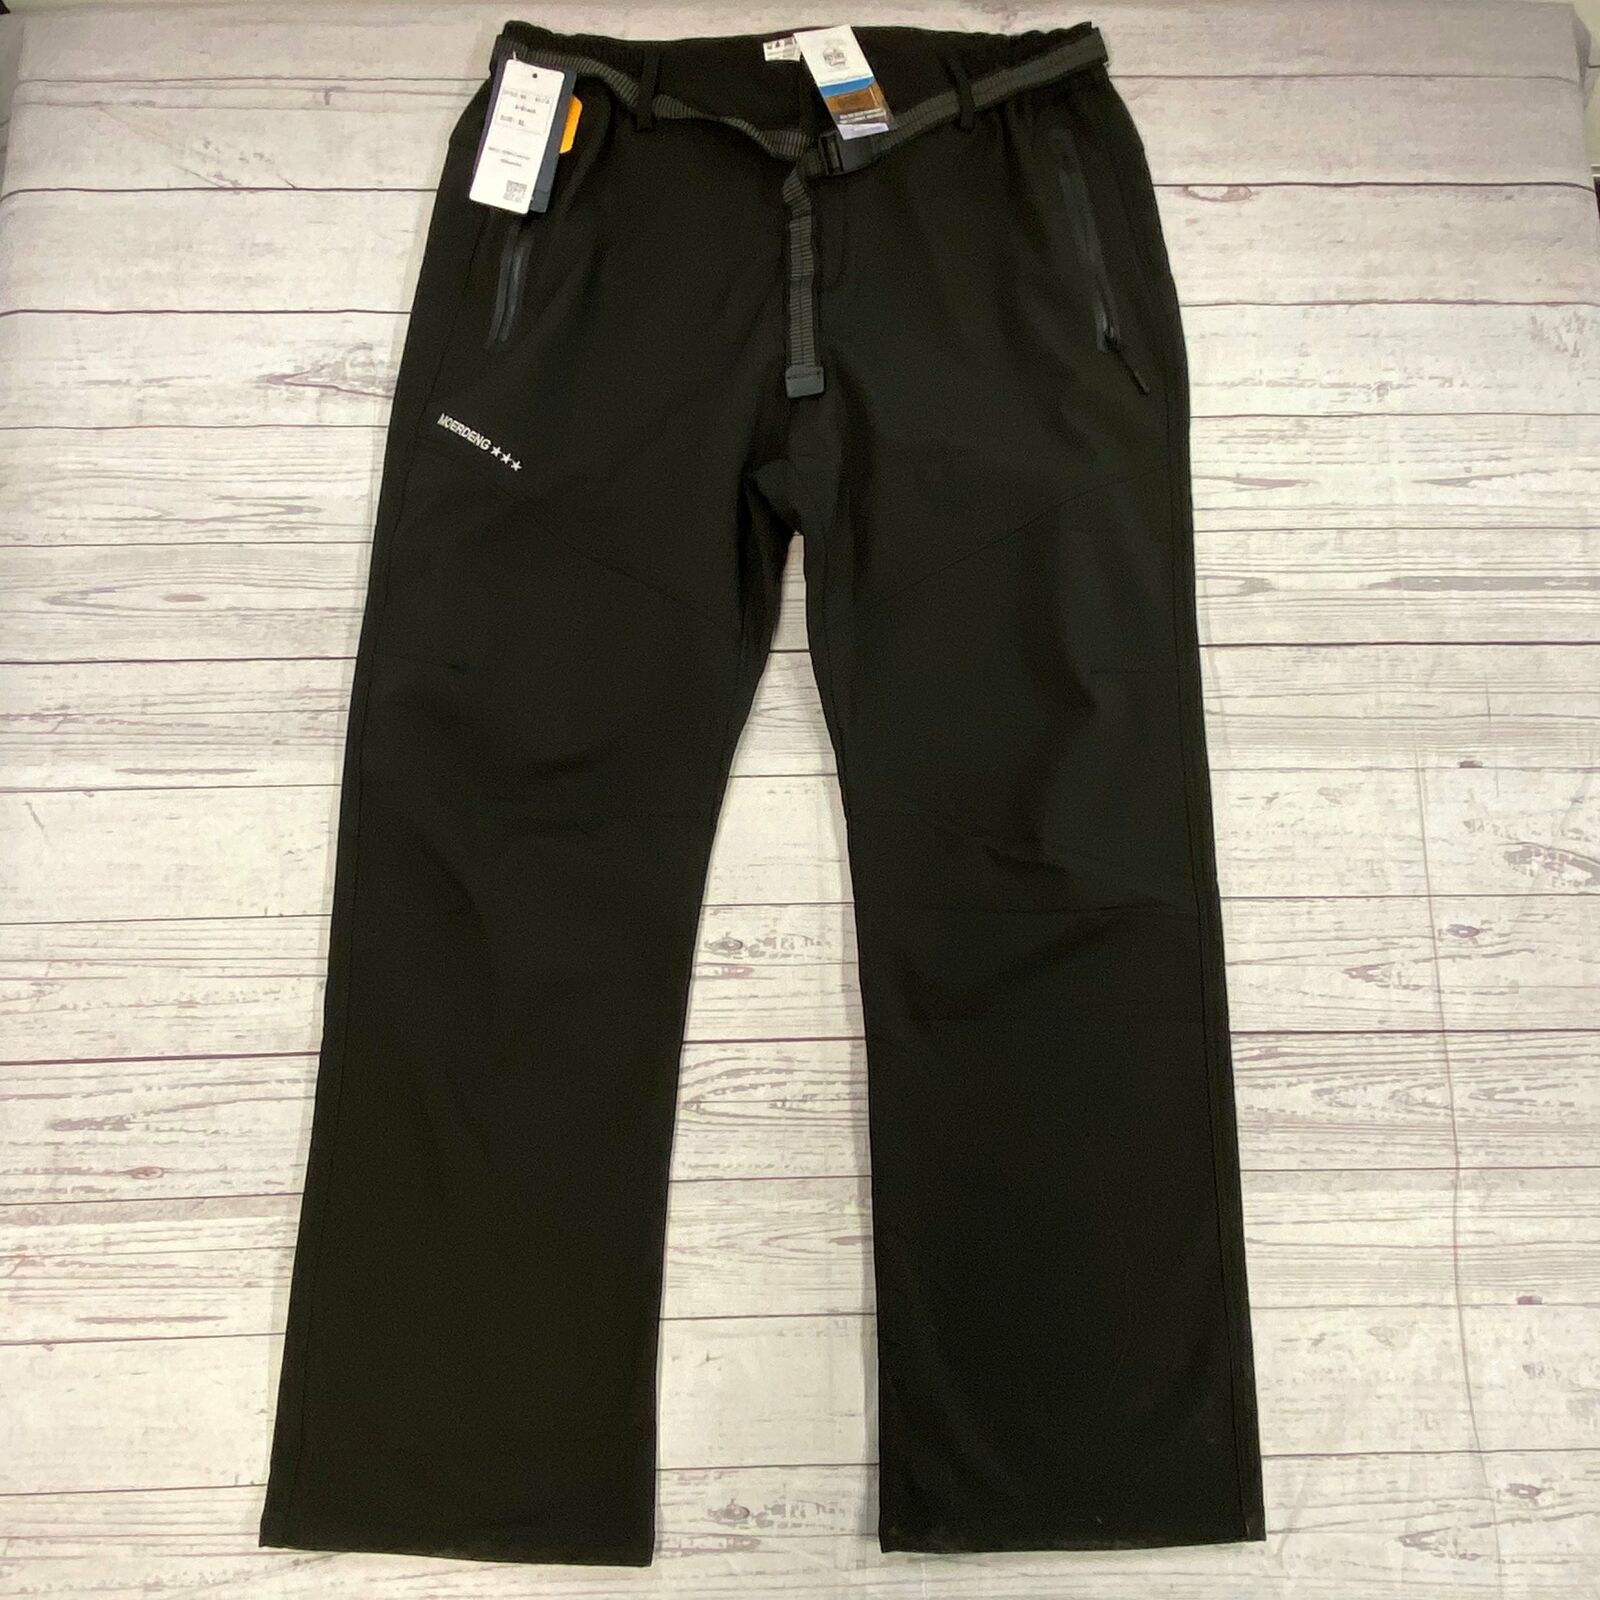 Moerdeng Black Insulated Snow Ski Pants Men Size XL Waist 36 NEW